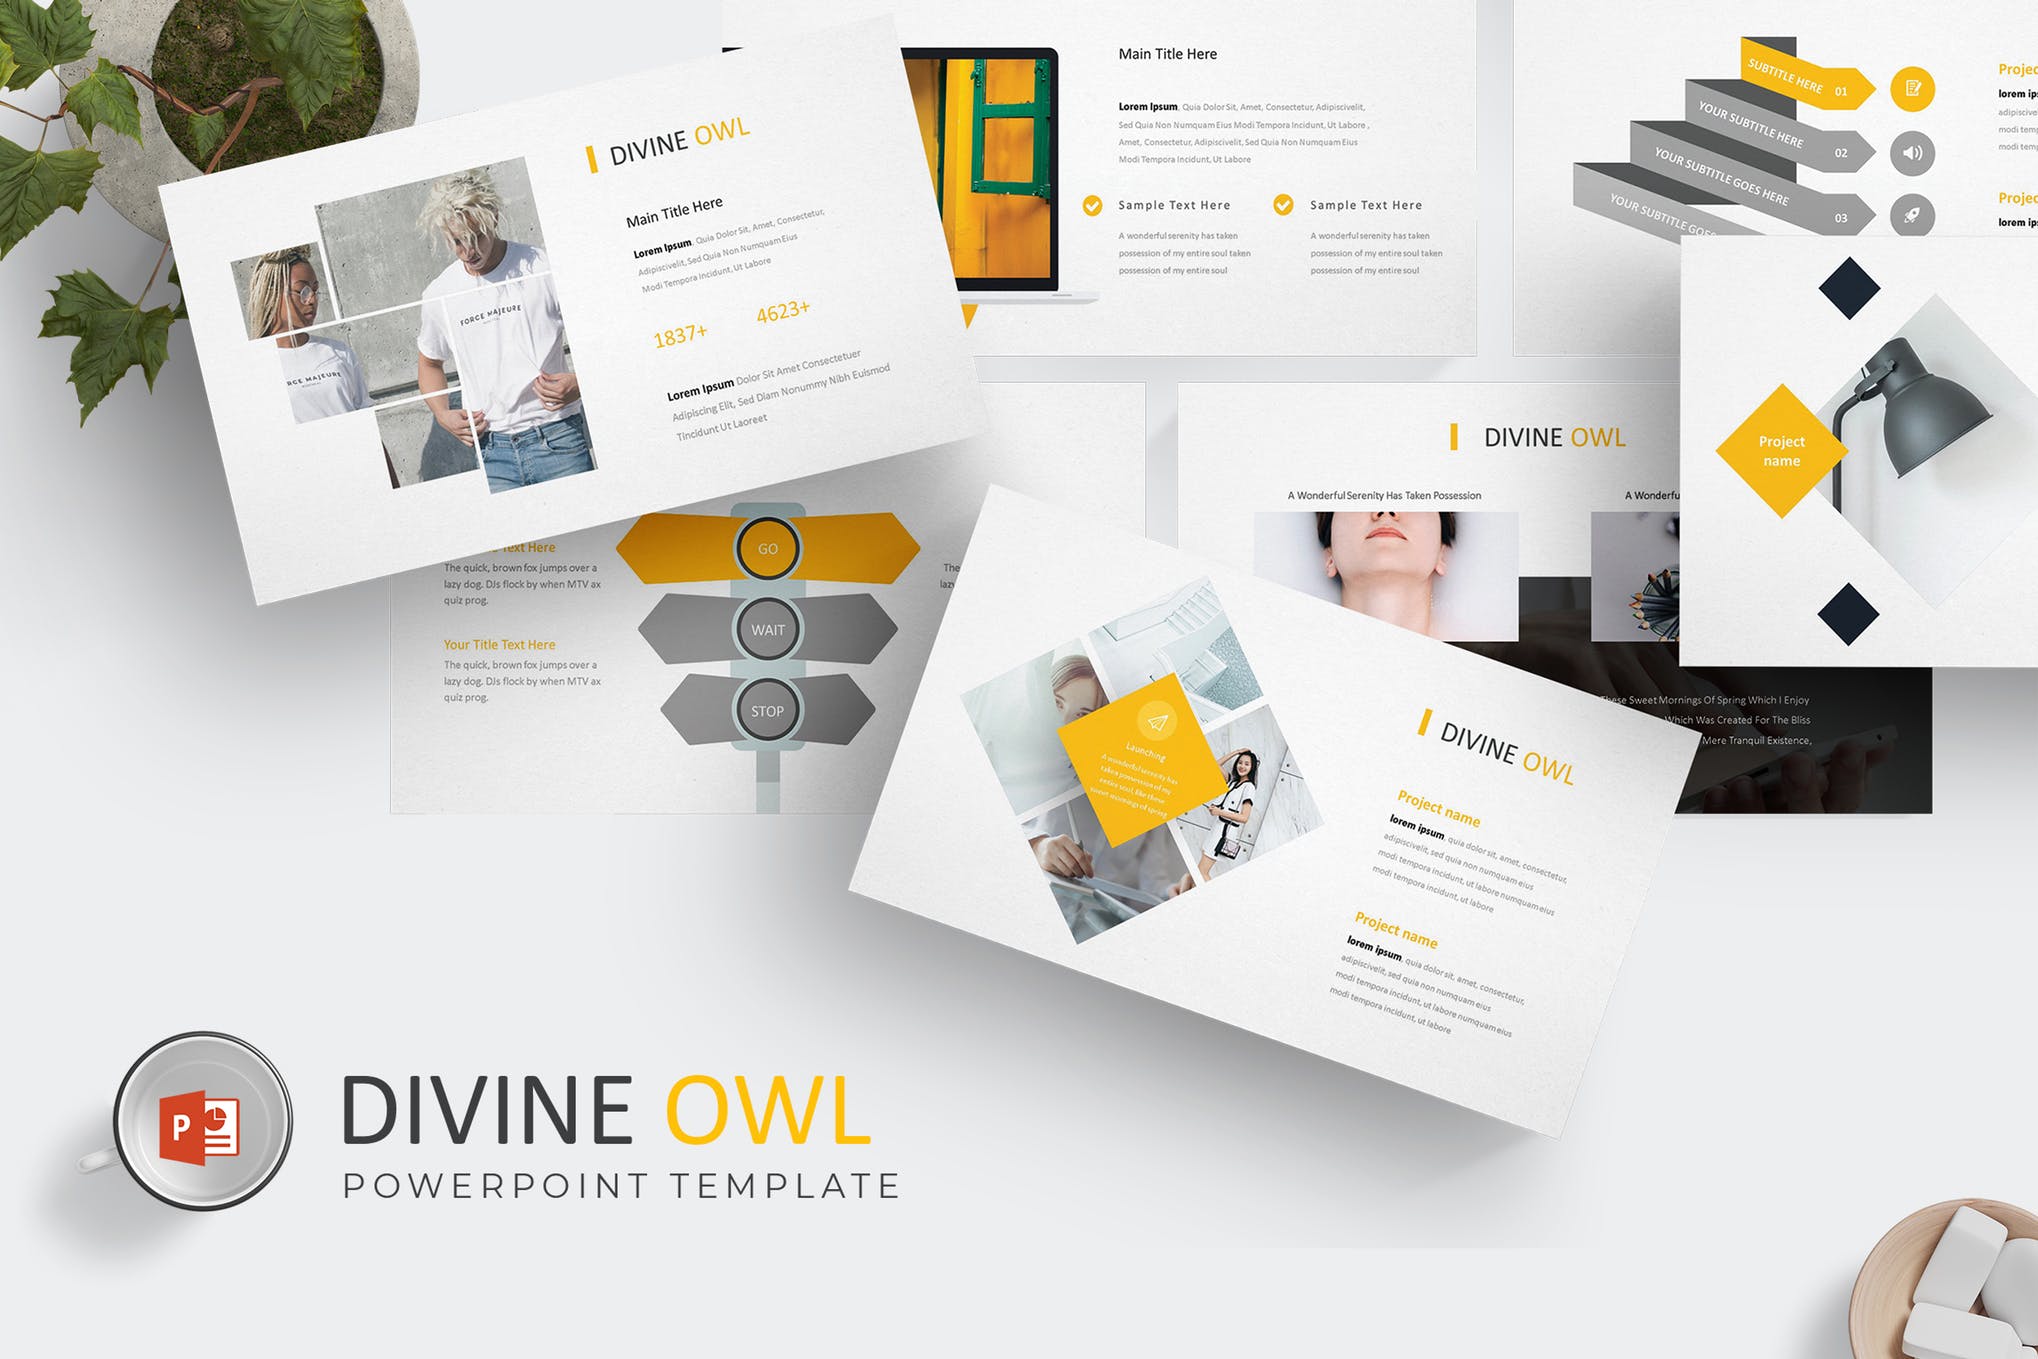 神圣的猫头鹰-Powerpoint模板 Divine Owl – Powerpoint Template插图